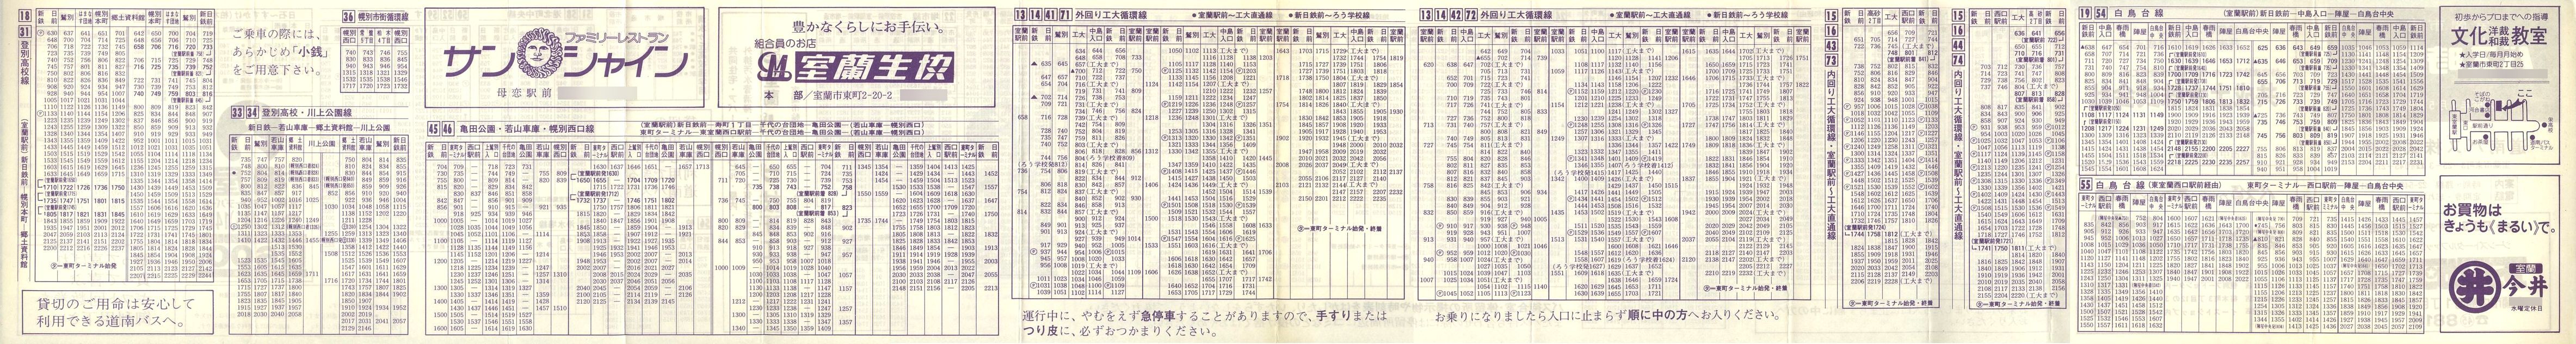 1981-04-05改正_道南バス_室蘭市内線時刻表裏面